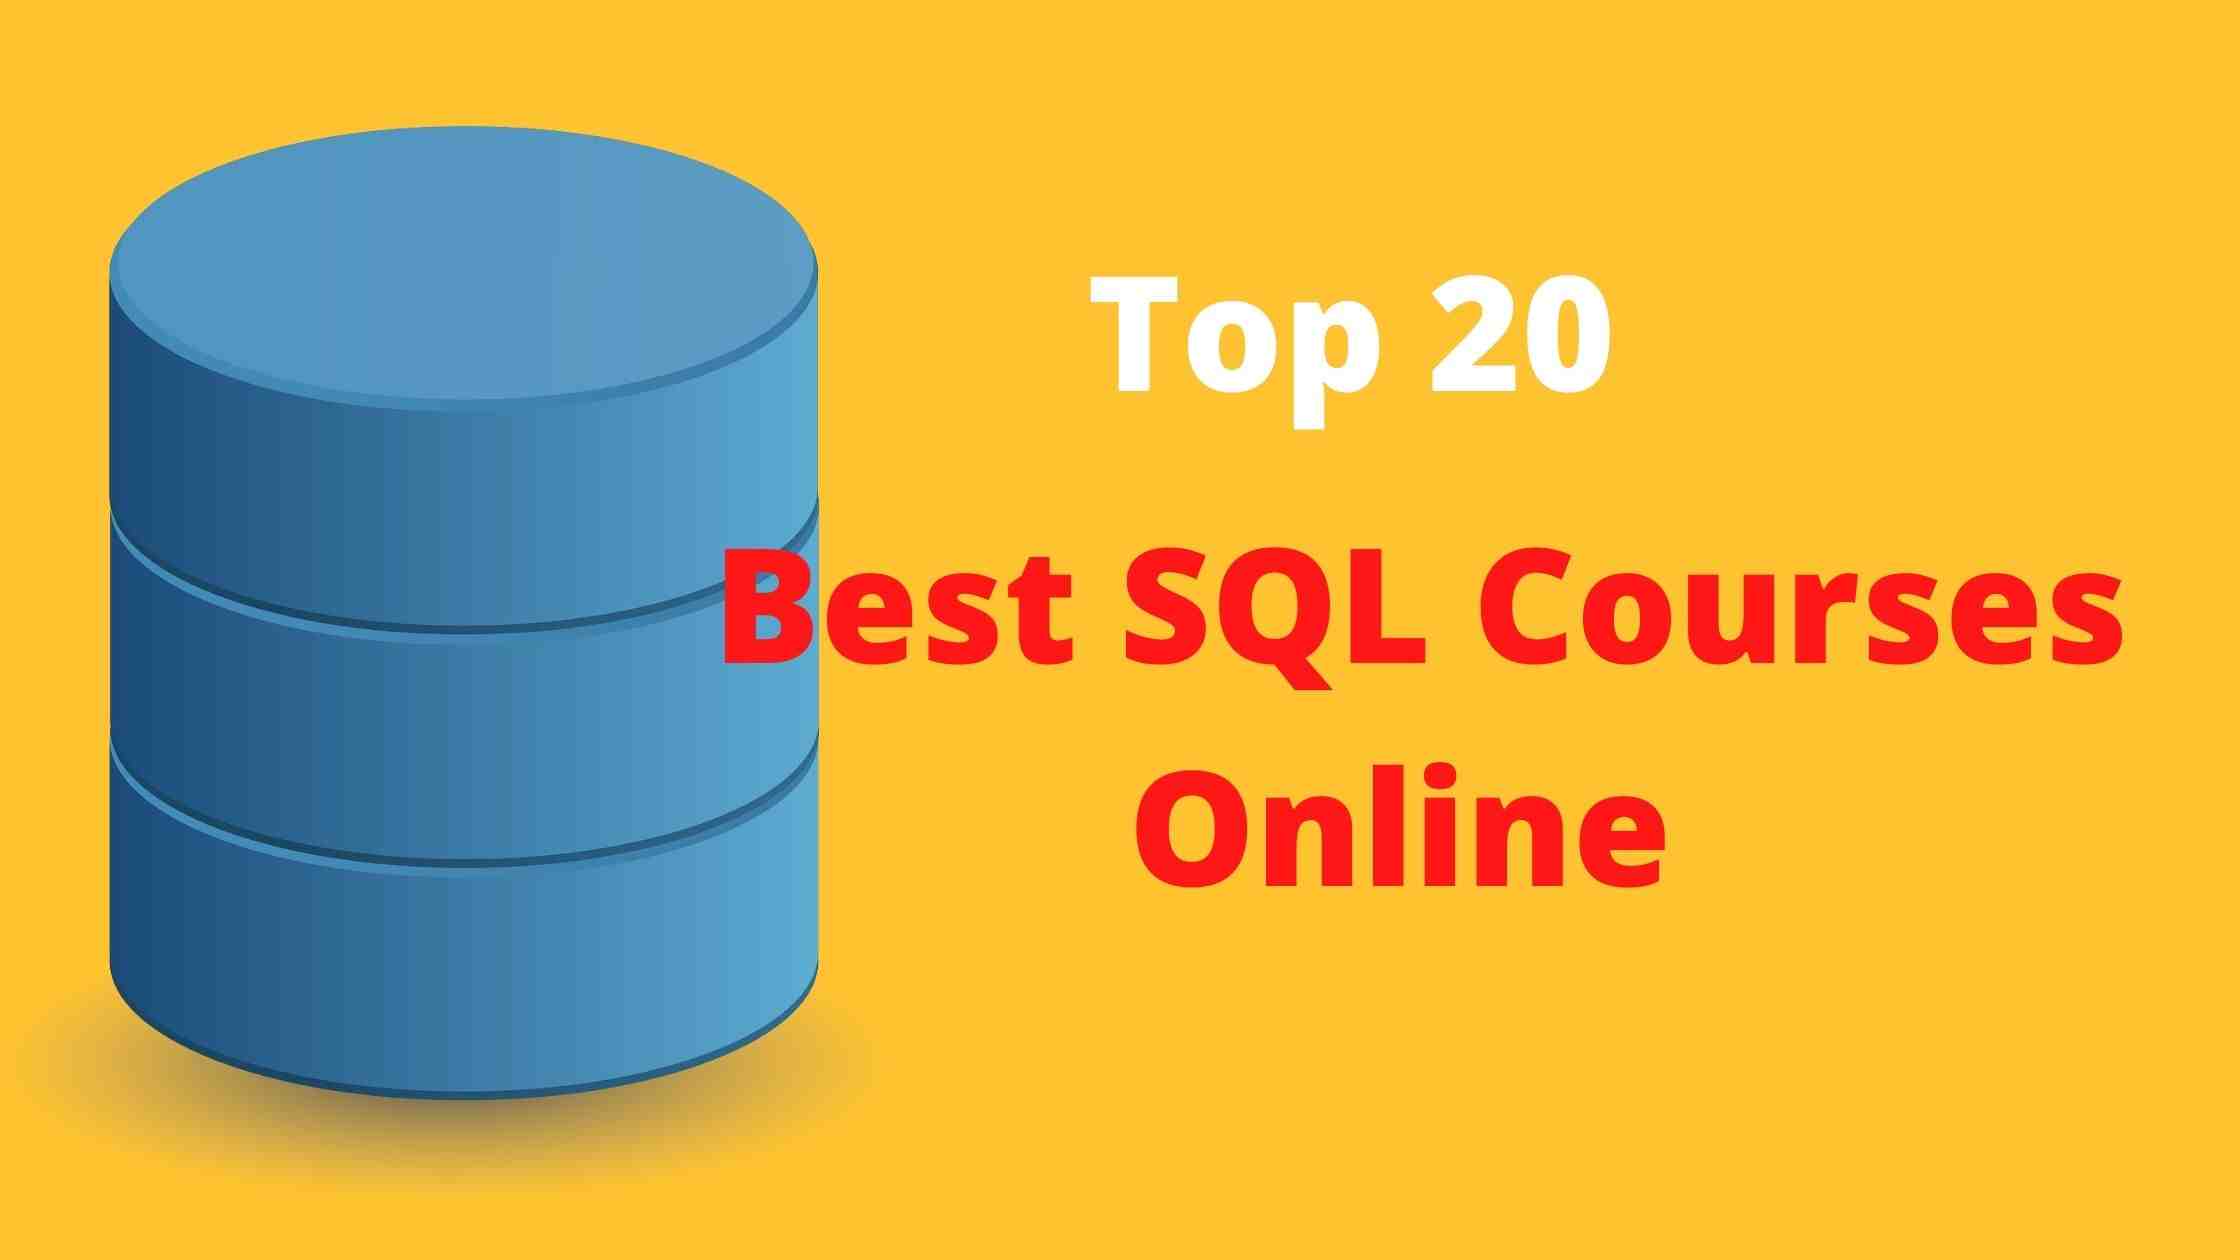 Best SQL Courses Online (Top 20) - CSE Academy